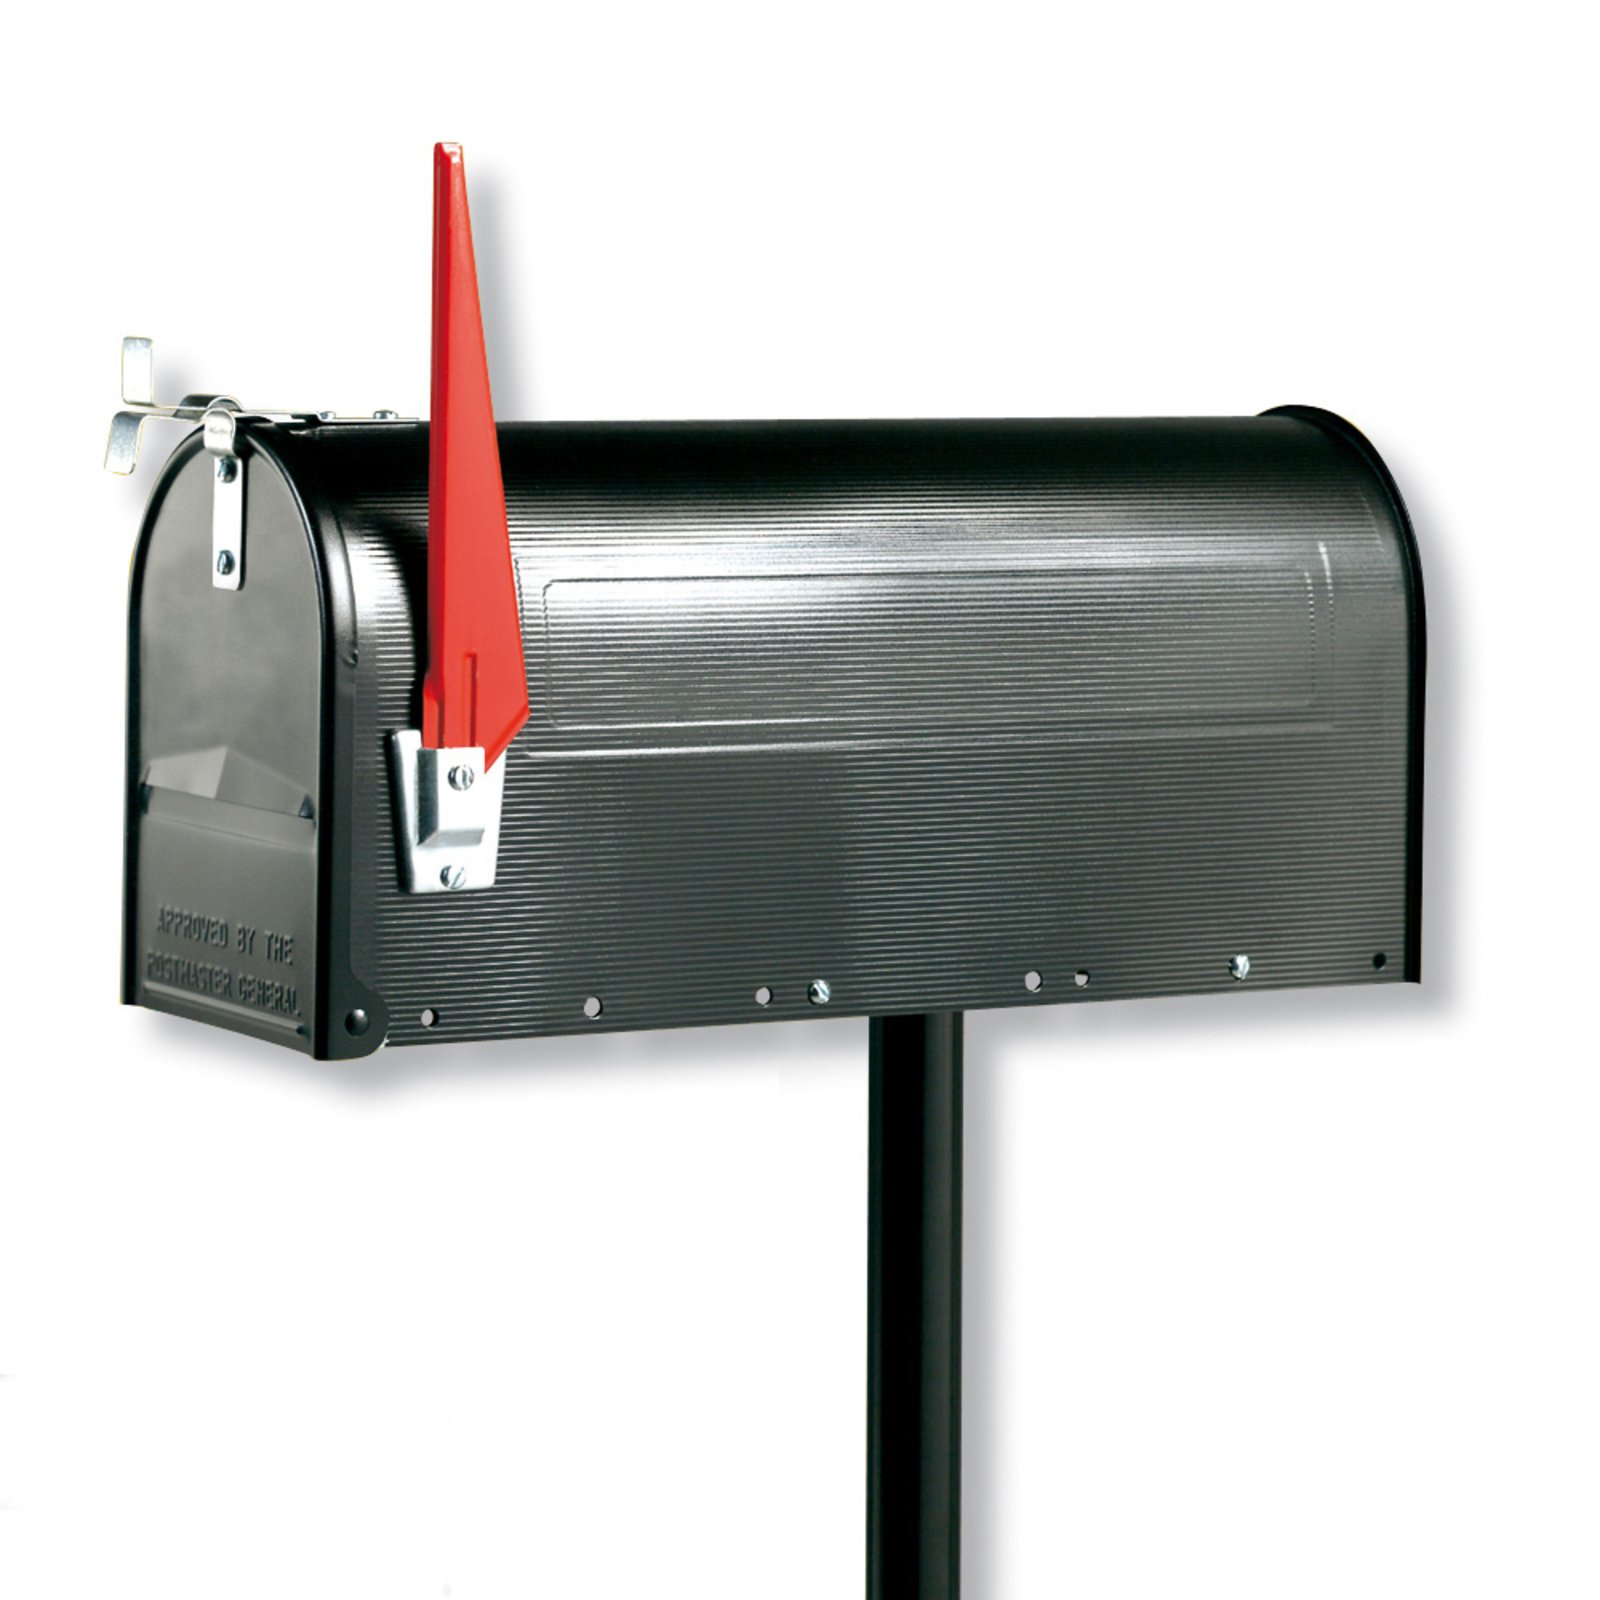 U.S. Mailbox mit schwenkbarer Fahne, schwarz